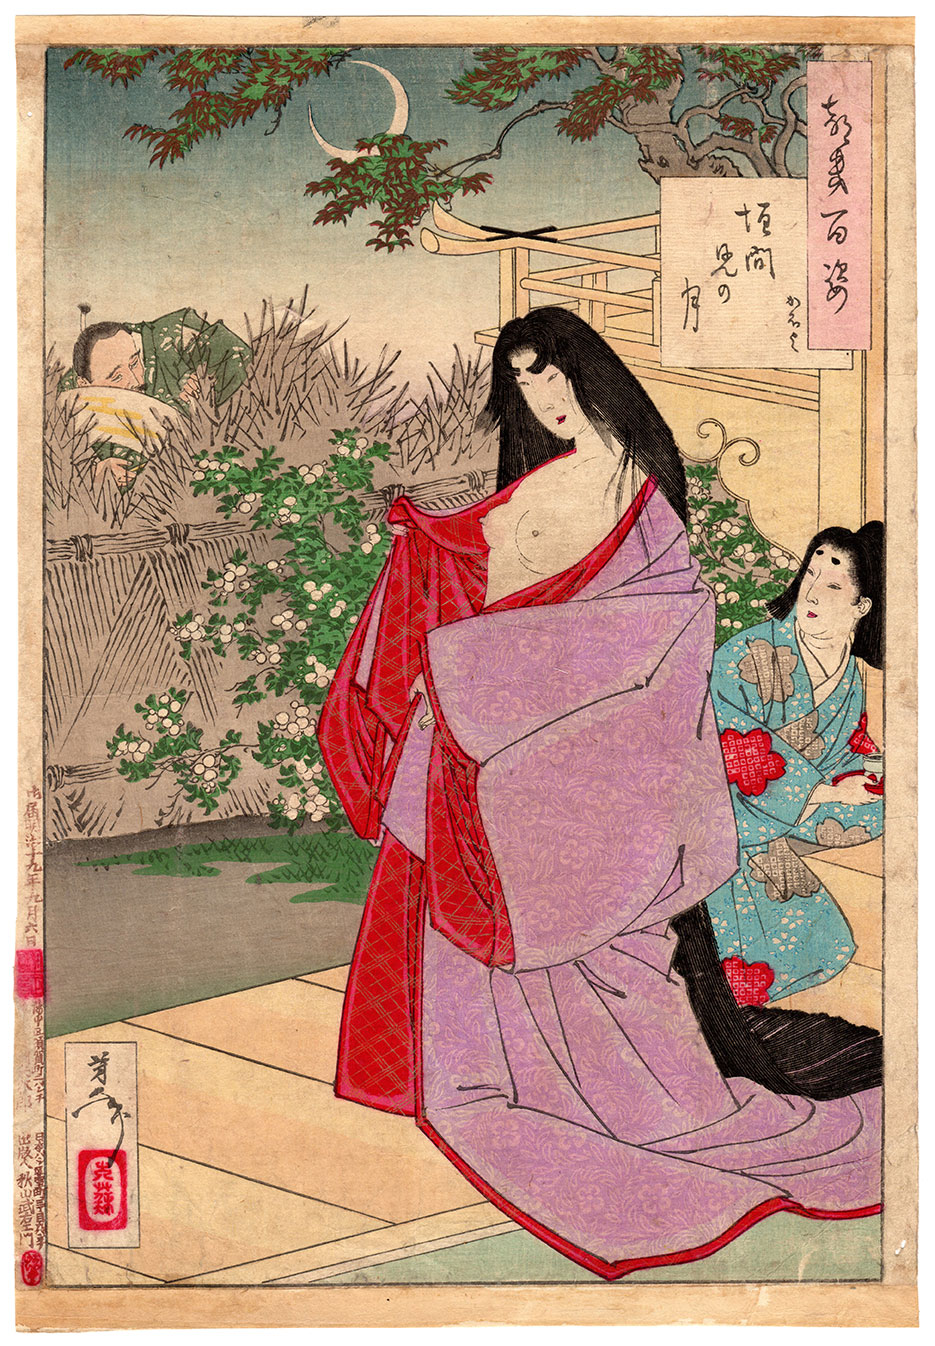 Întrezărirea lunii by Tsukioka Yoshitoshi - 1886 - 24 x 34,5 cm 